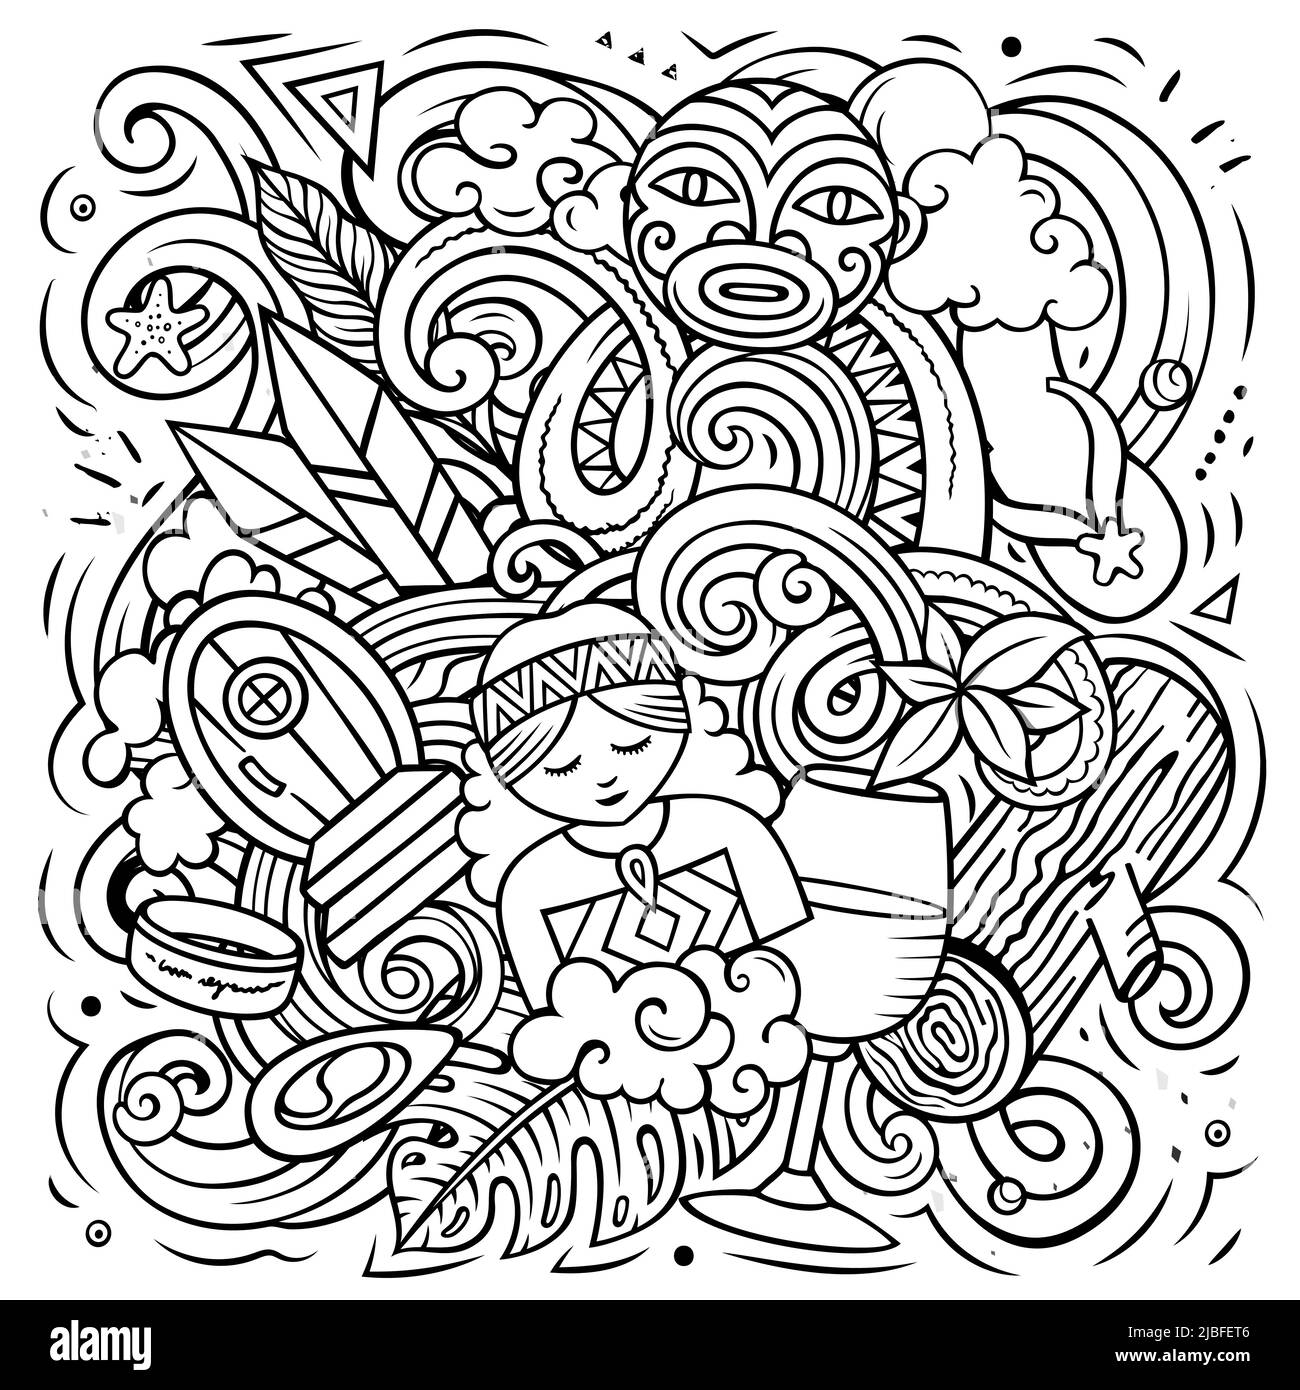 Nuova Zelanda disegno a mano cartoon doodle illustrazione. Design divertente. Sfondo vettoriale creativo con elementi e oggetti Oceania Country. Illustrazione Vettoriale